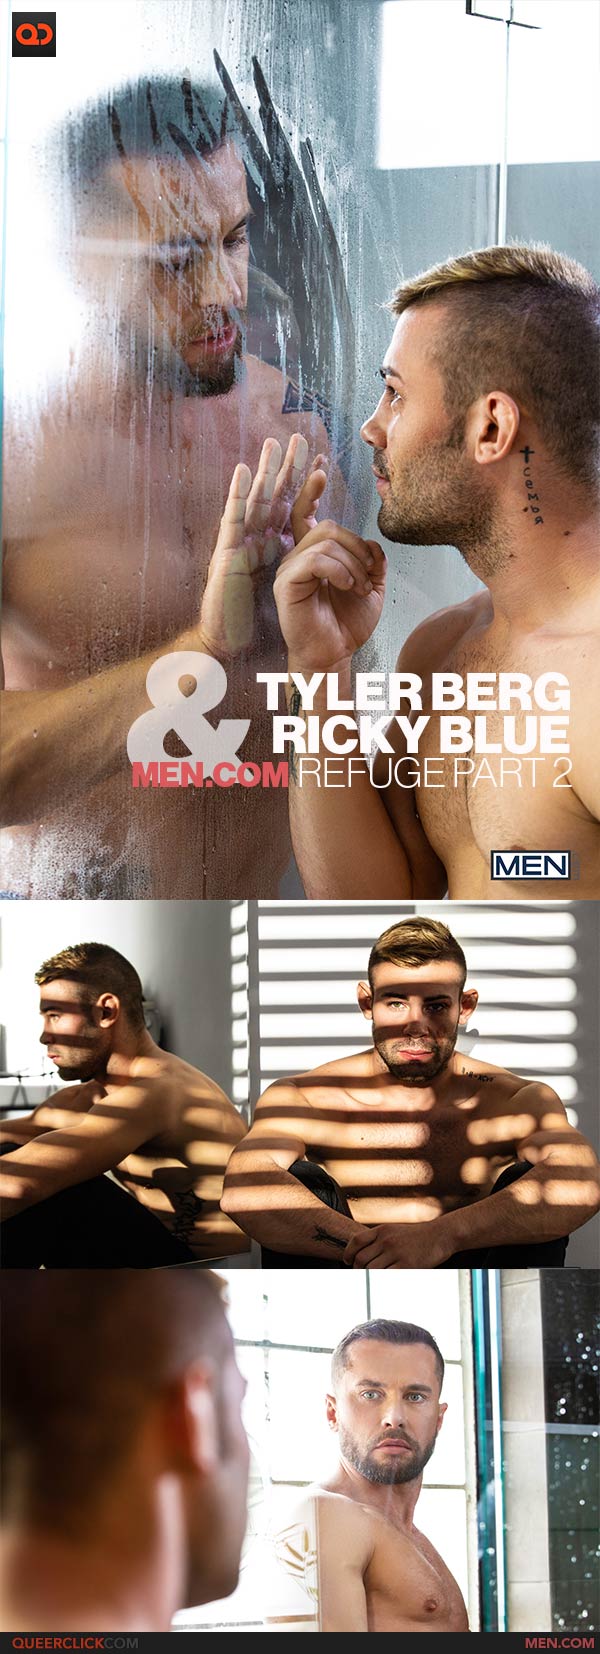 Men.com: Tyler Berg and Ricky Blue